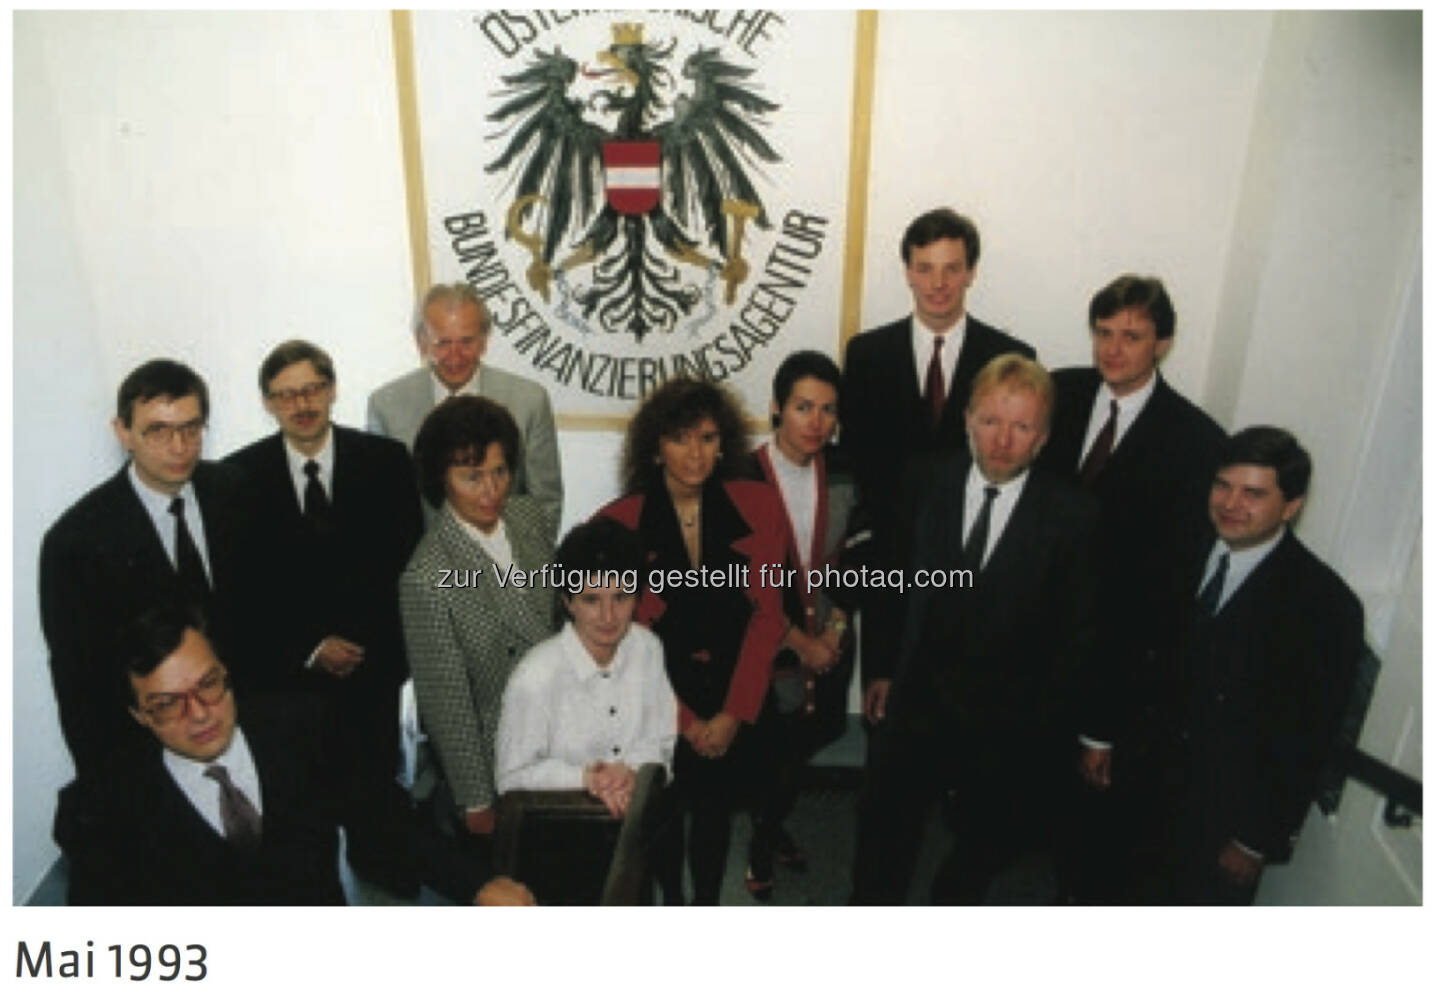 20 Jahre Österreichische Bundesfinanzierungsagentur: Team 1993 - mehr unter http://www.oebfa.at/de/osn/DownloadCenter/Die%20OeBFA/OeBFA_Geschichte_web.pdf